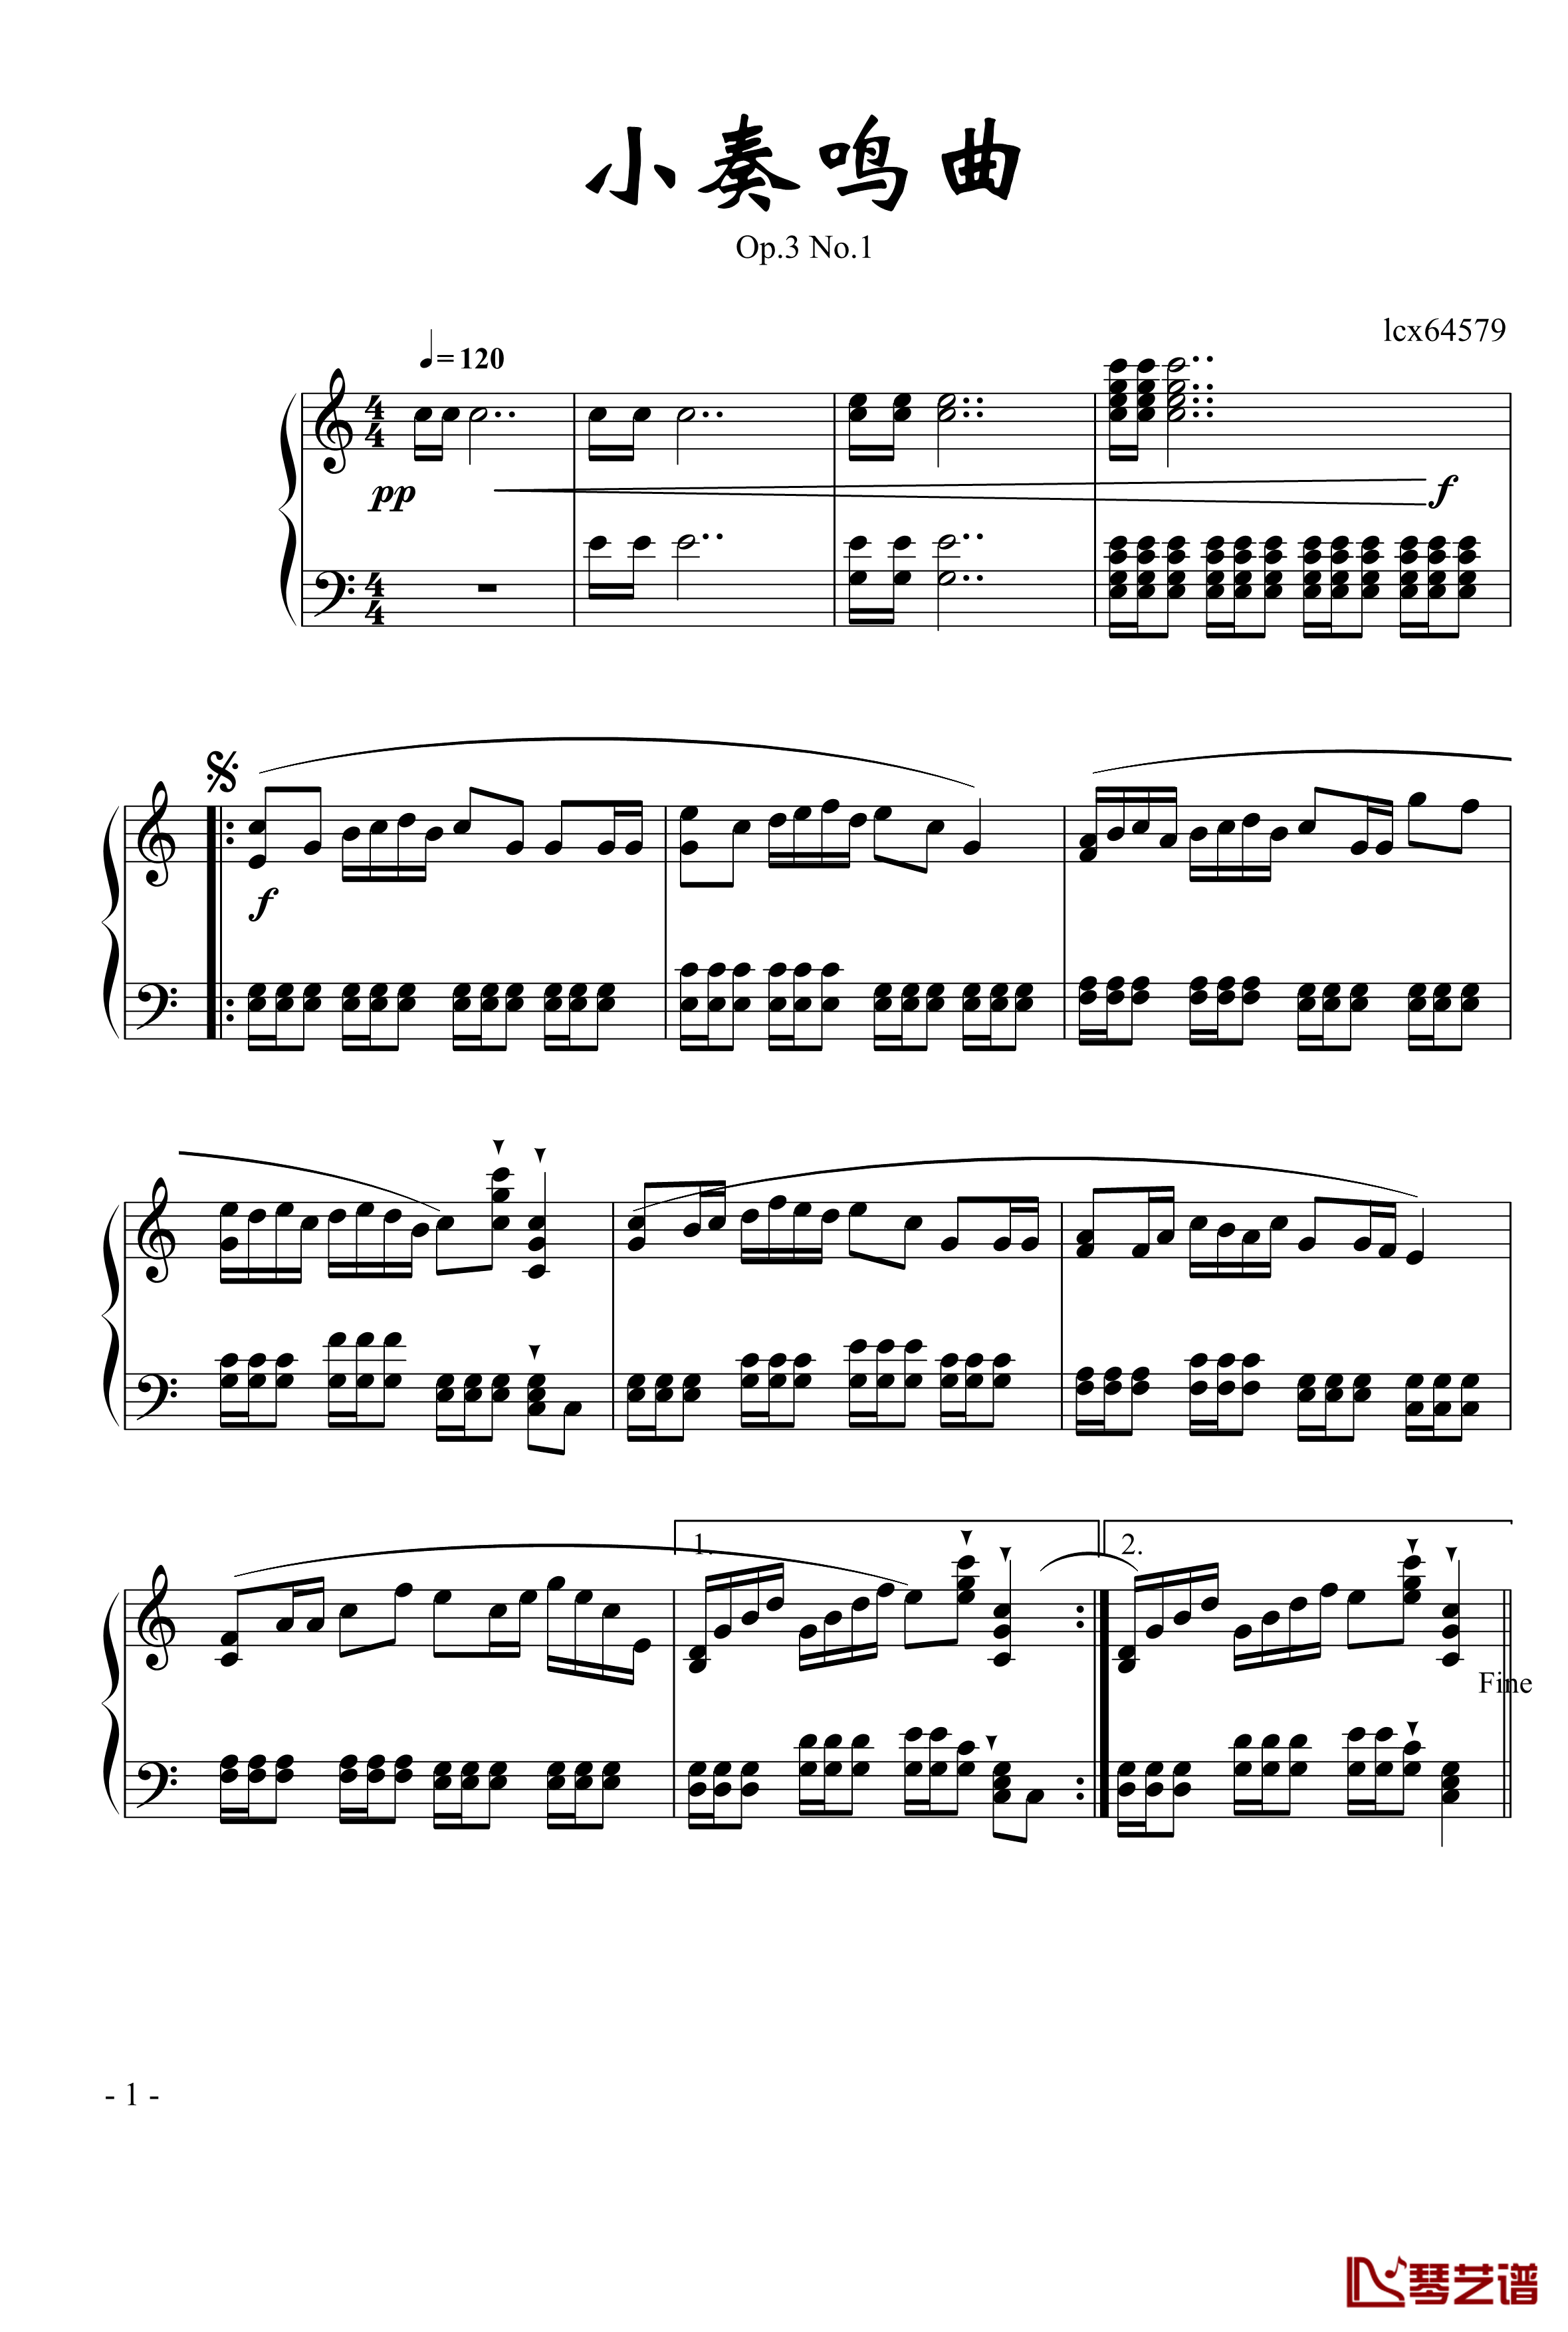 小奏鸣曲钢琴谱-lcx645791